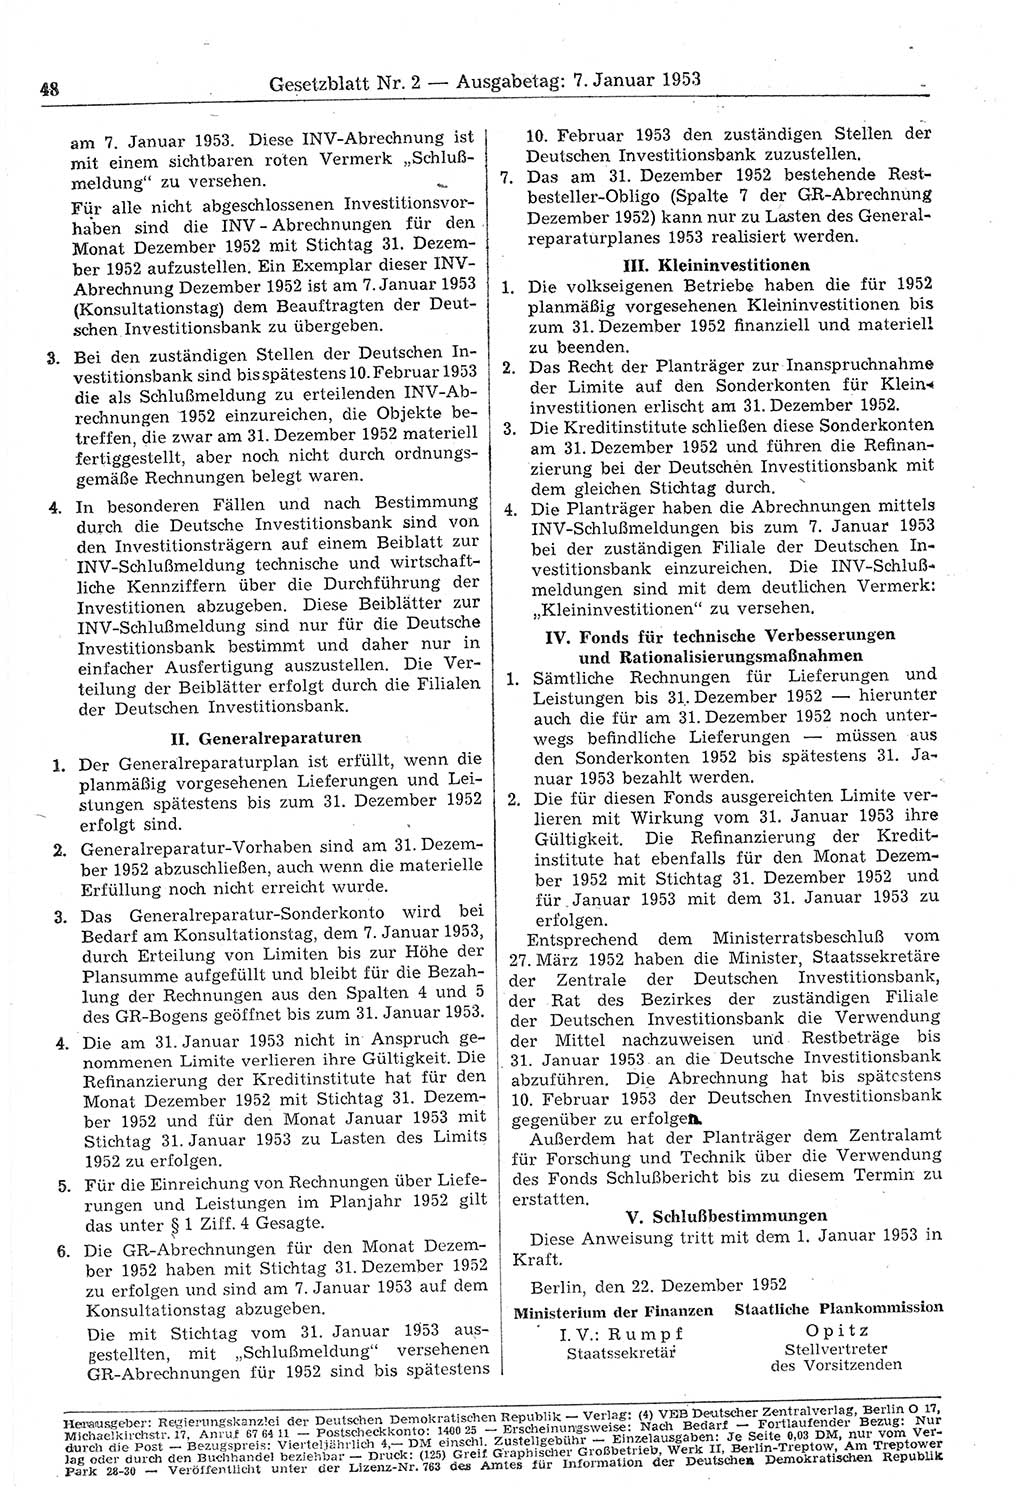 Gesetzblatt (GBl.) der Deutschen Demokratischen Republik (DDR) 1953, Seite 48 (GBl. DDR 1953, S. 48)